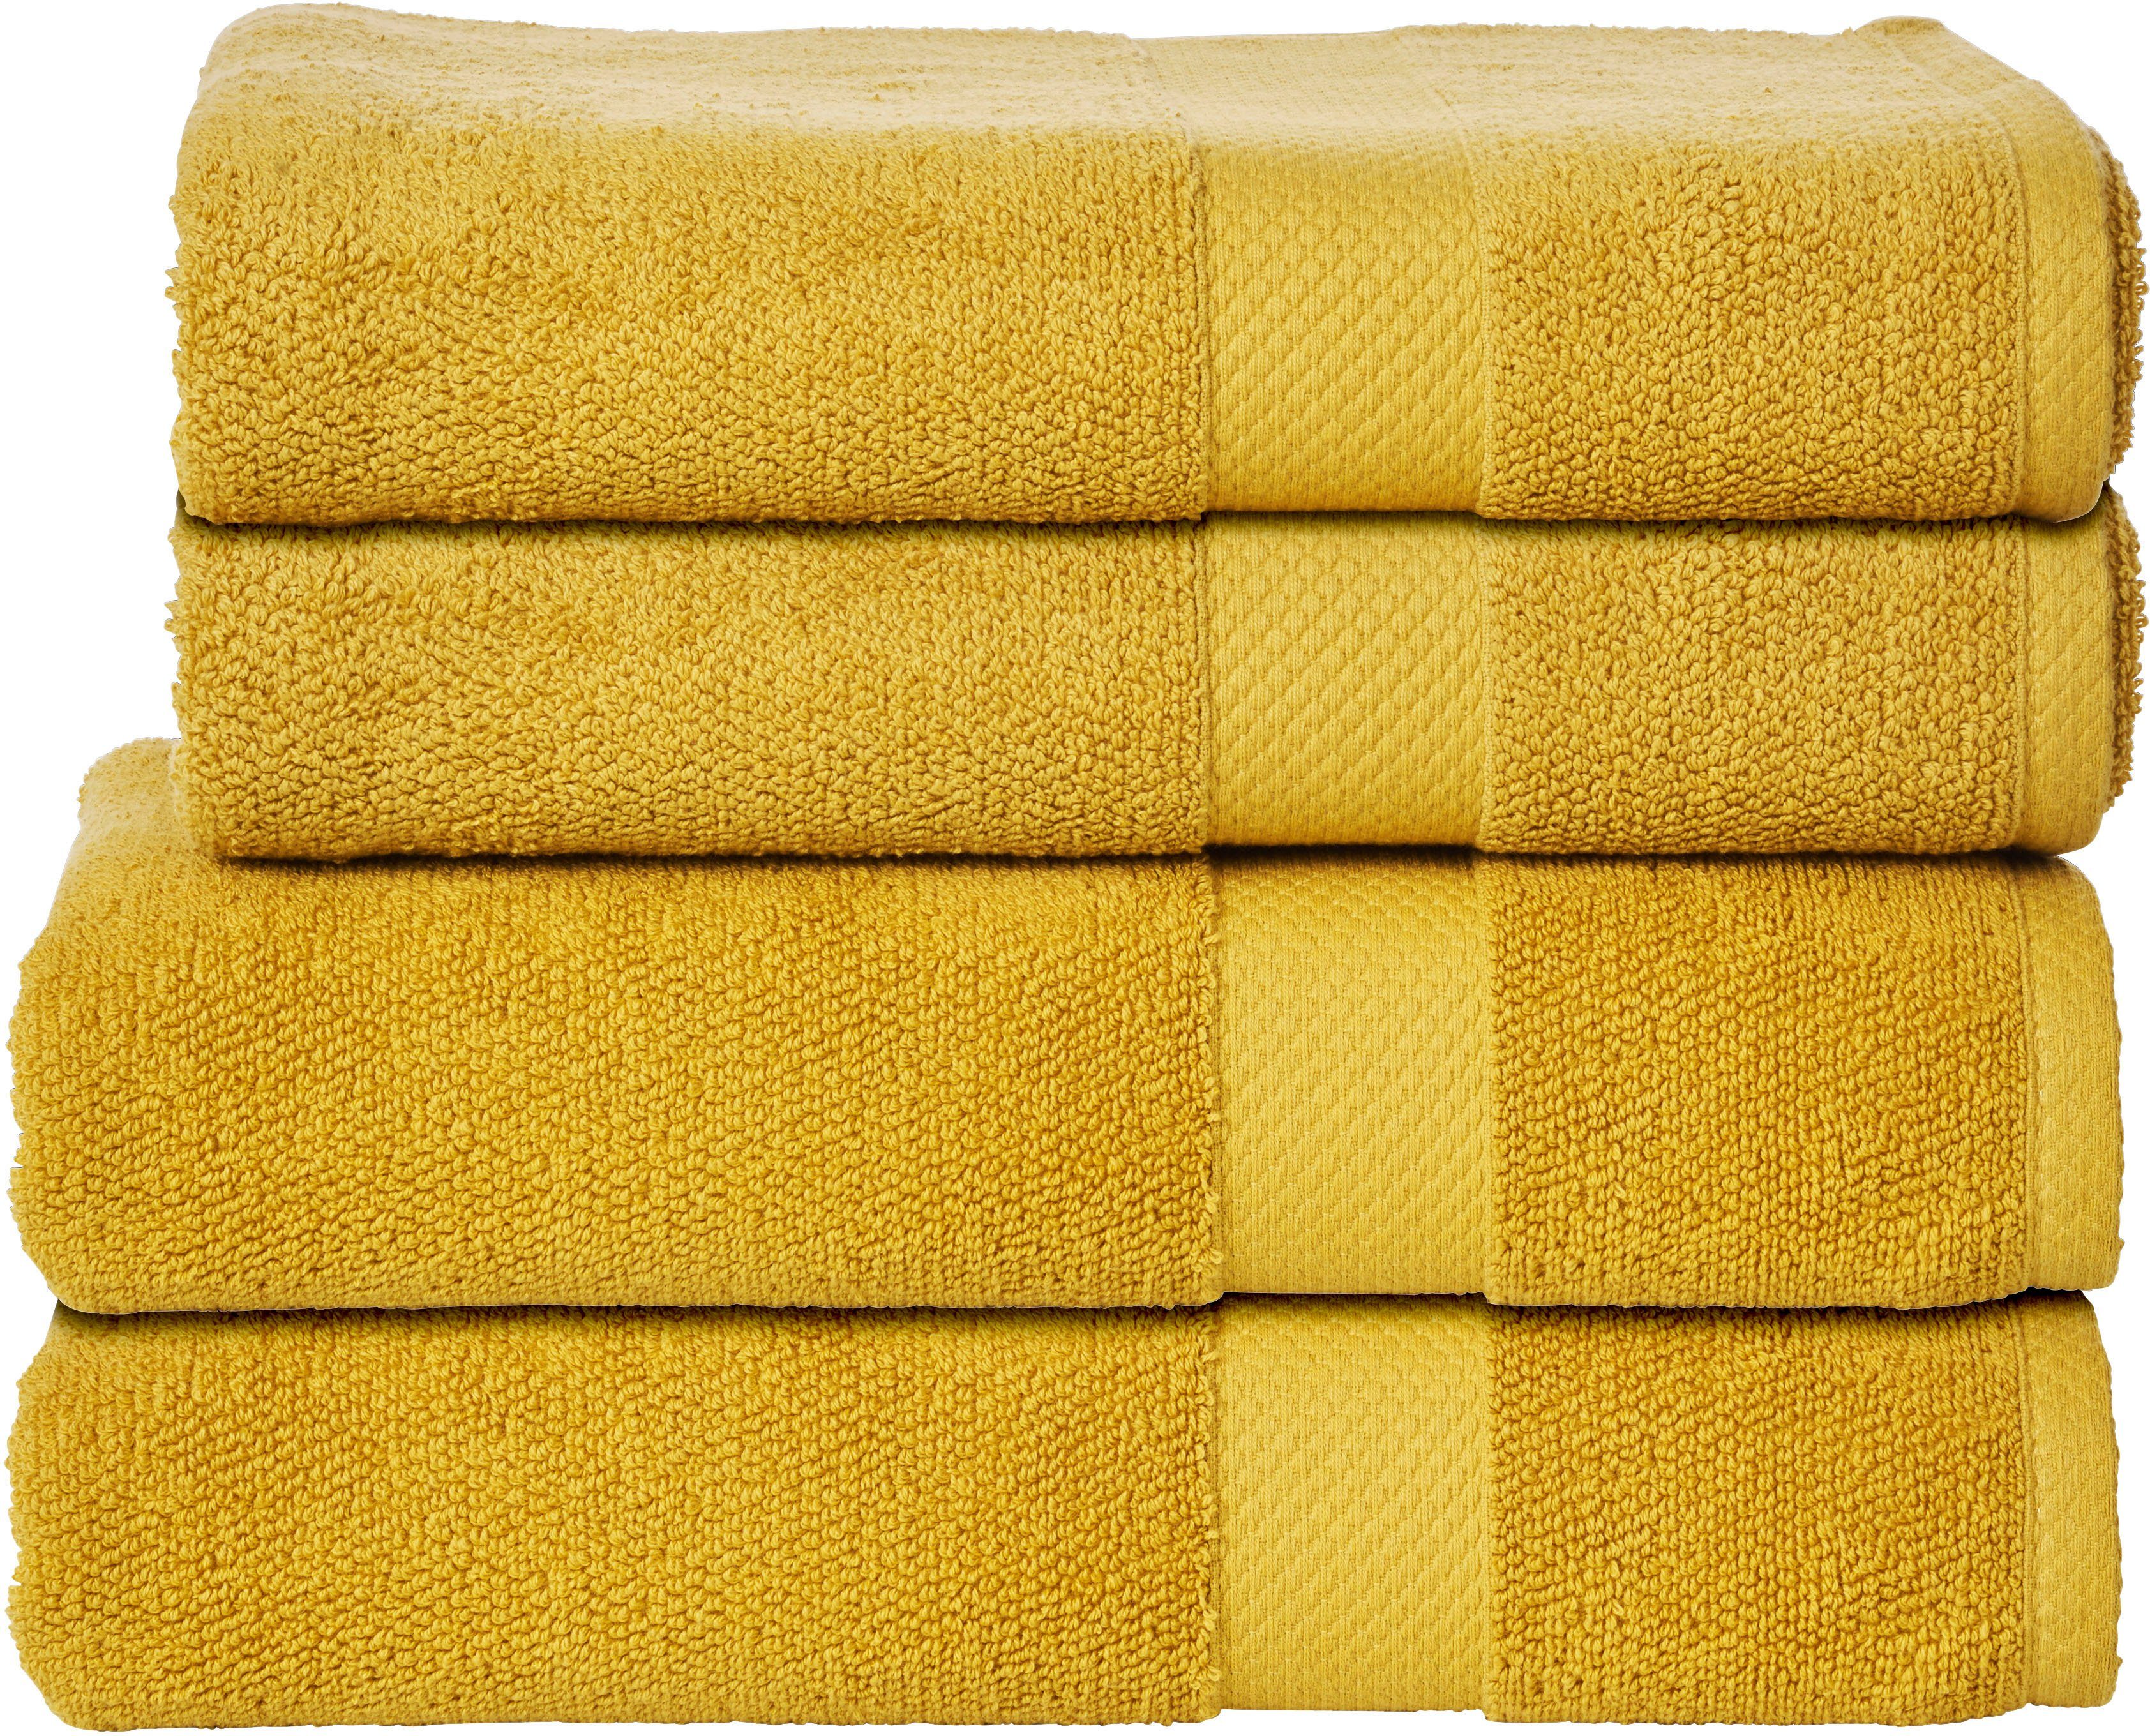 Goldene Handtücher online kaufen » Gold Handtücher | OTTO